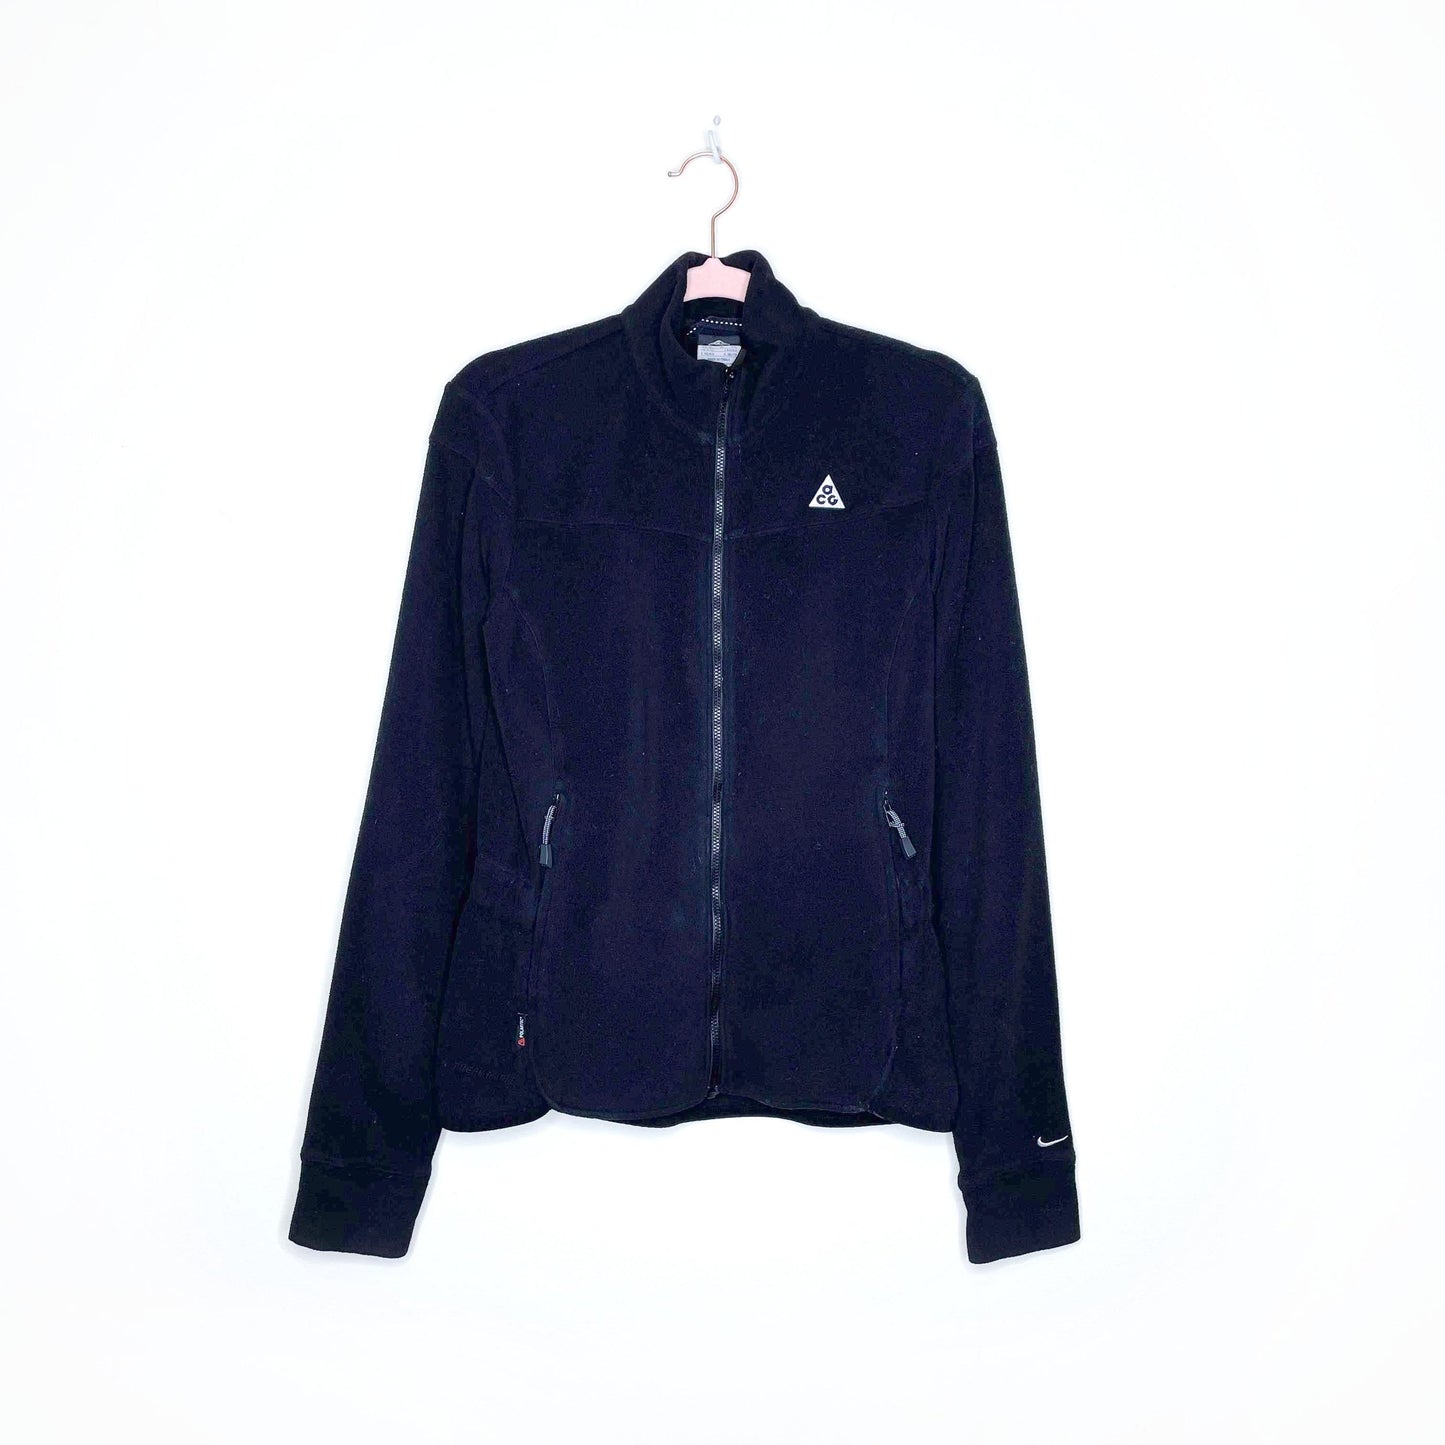 nike acg black zip up fleece jacket - size small